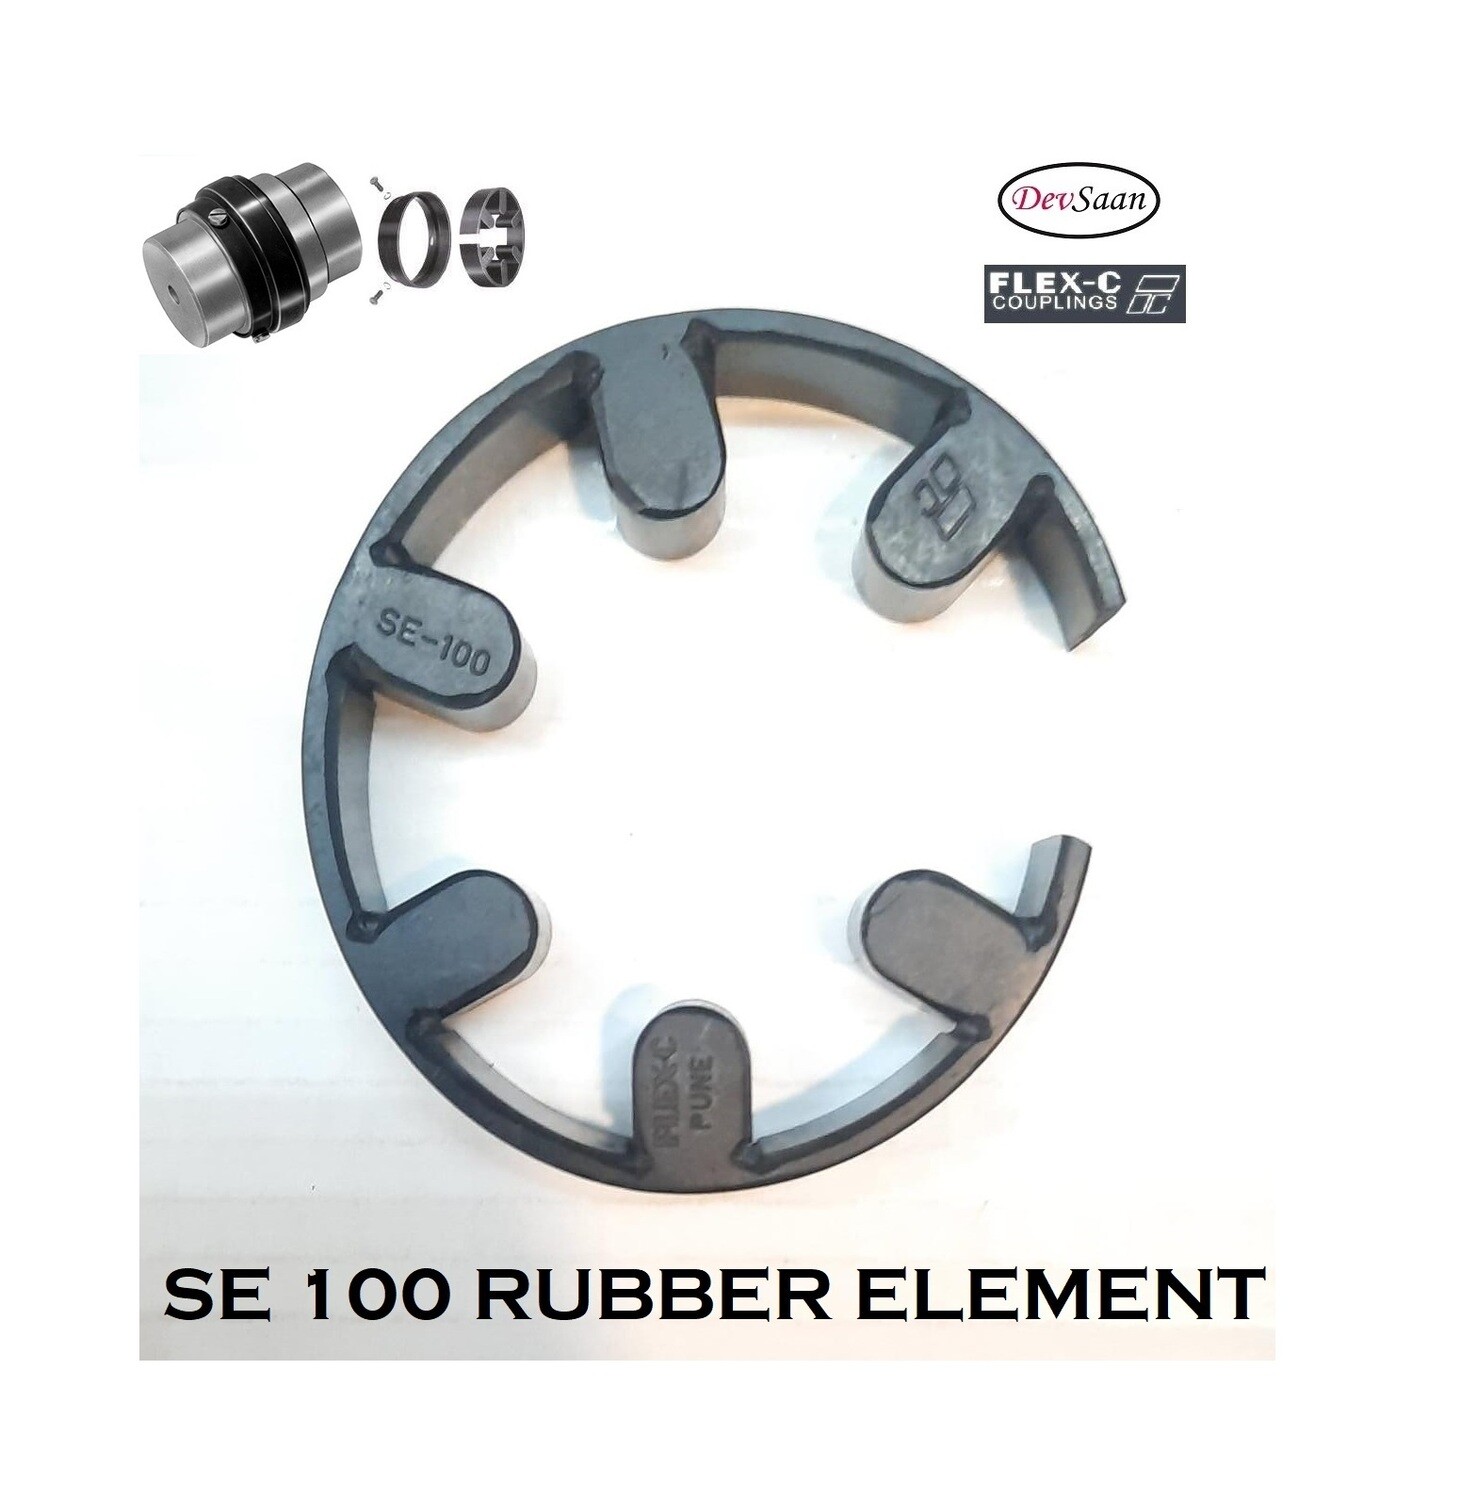 Coupling Rubber Element SE 100 Flex-C